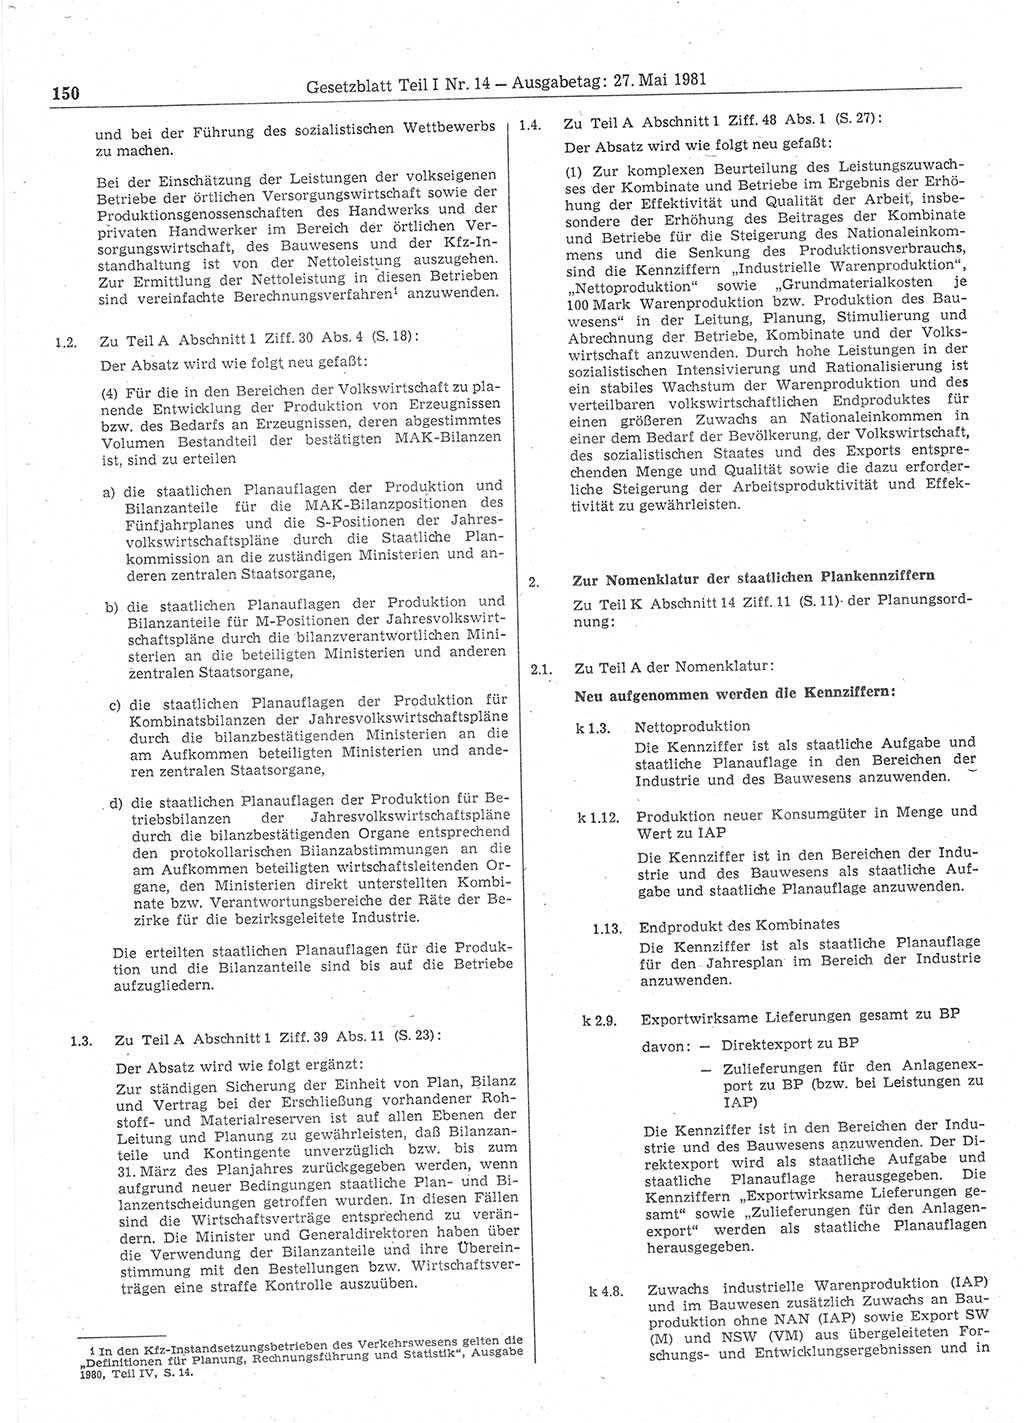 Gesetzblatt (GBl.) der Deutschen Demokratischen Republik (DDR) Teil Ⅰ 1981, Seite 150 (GBl. DDR Ⅰ 1981, S. 150)